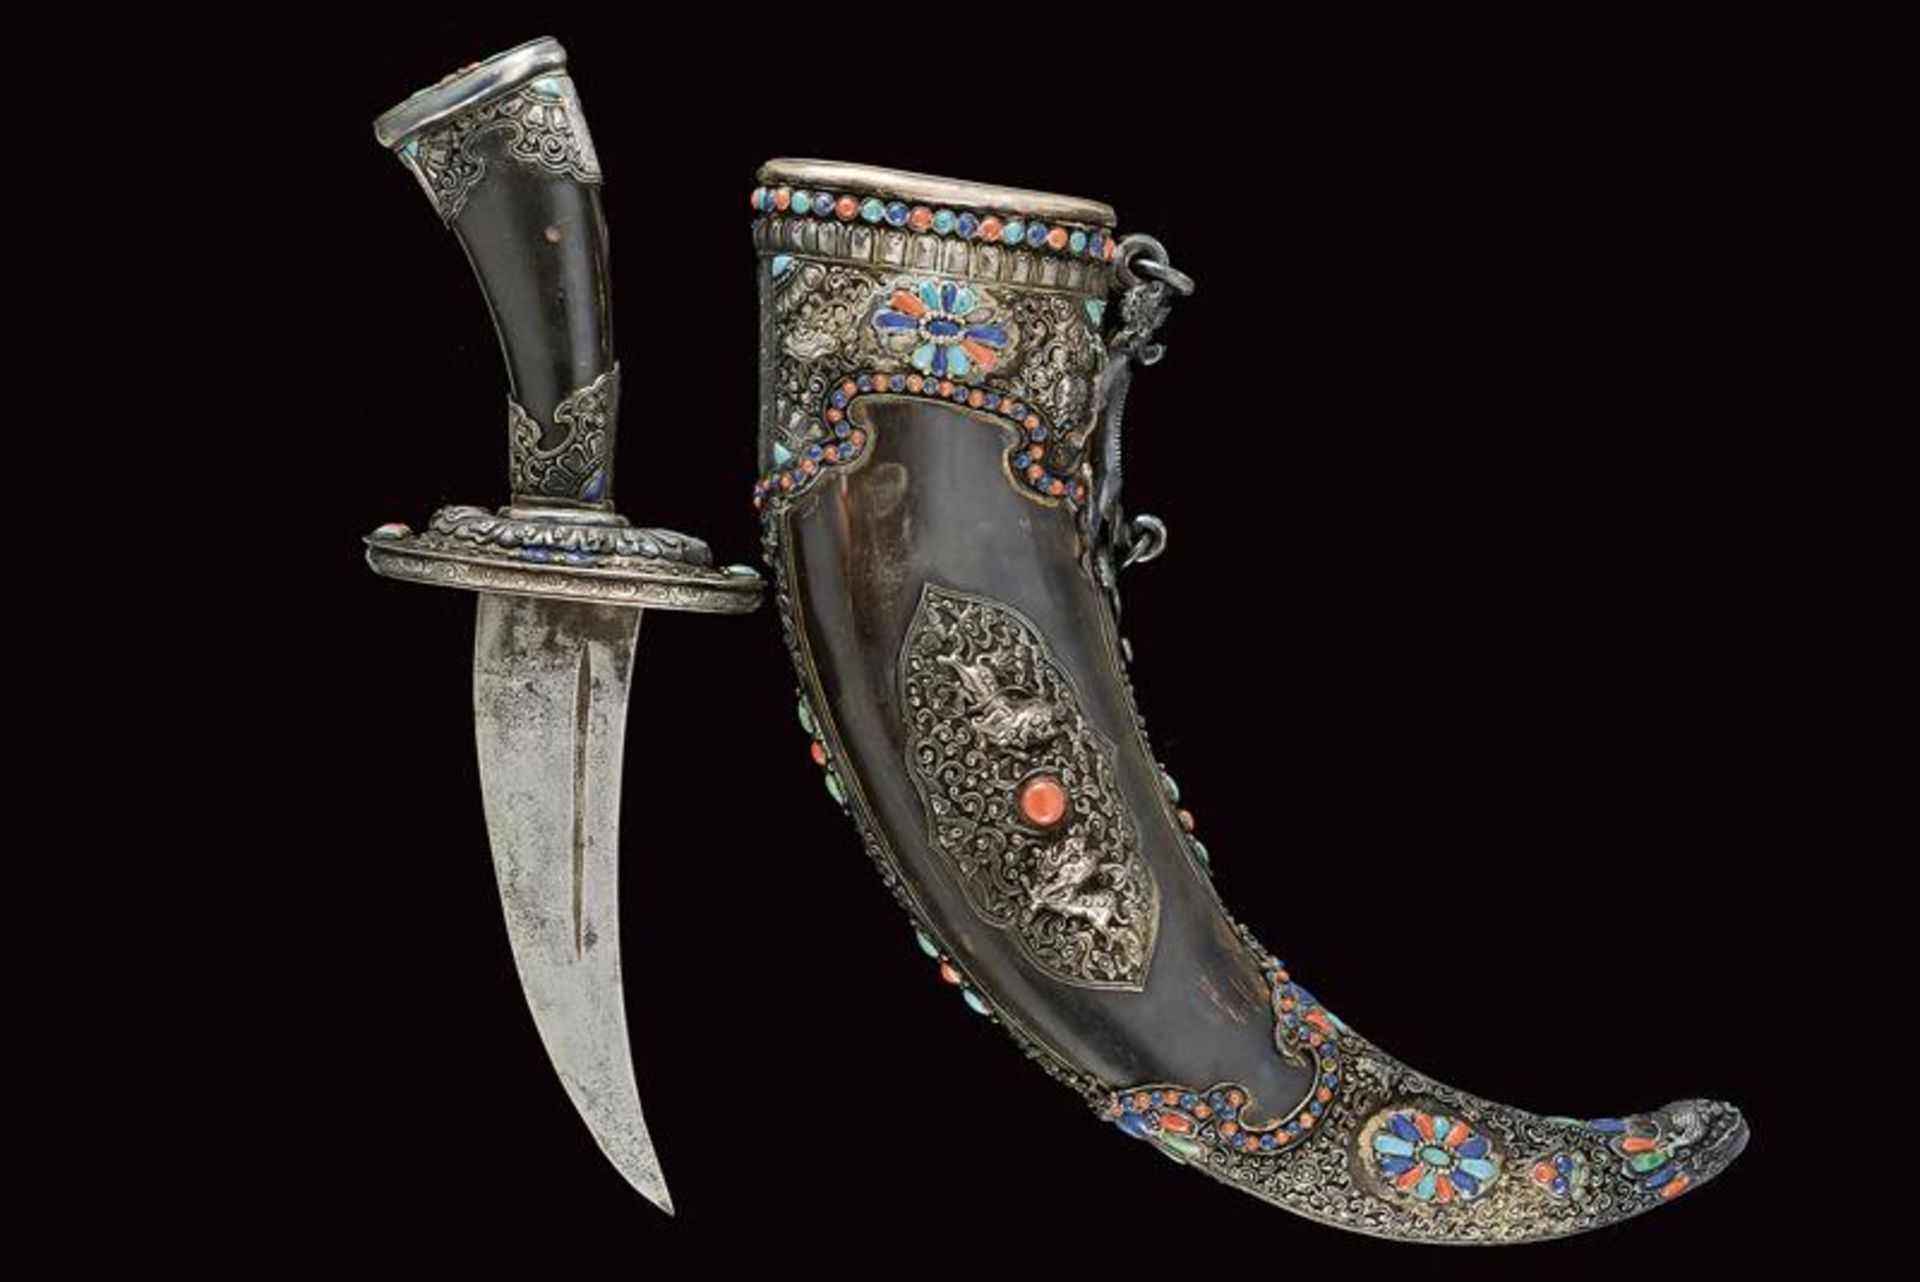 A rare silver-mounted ceremonial short sword